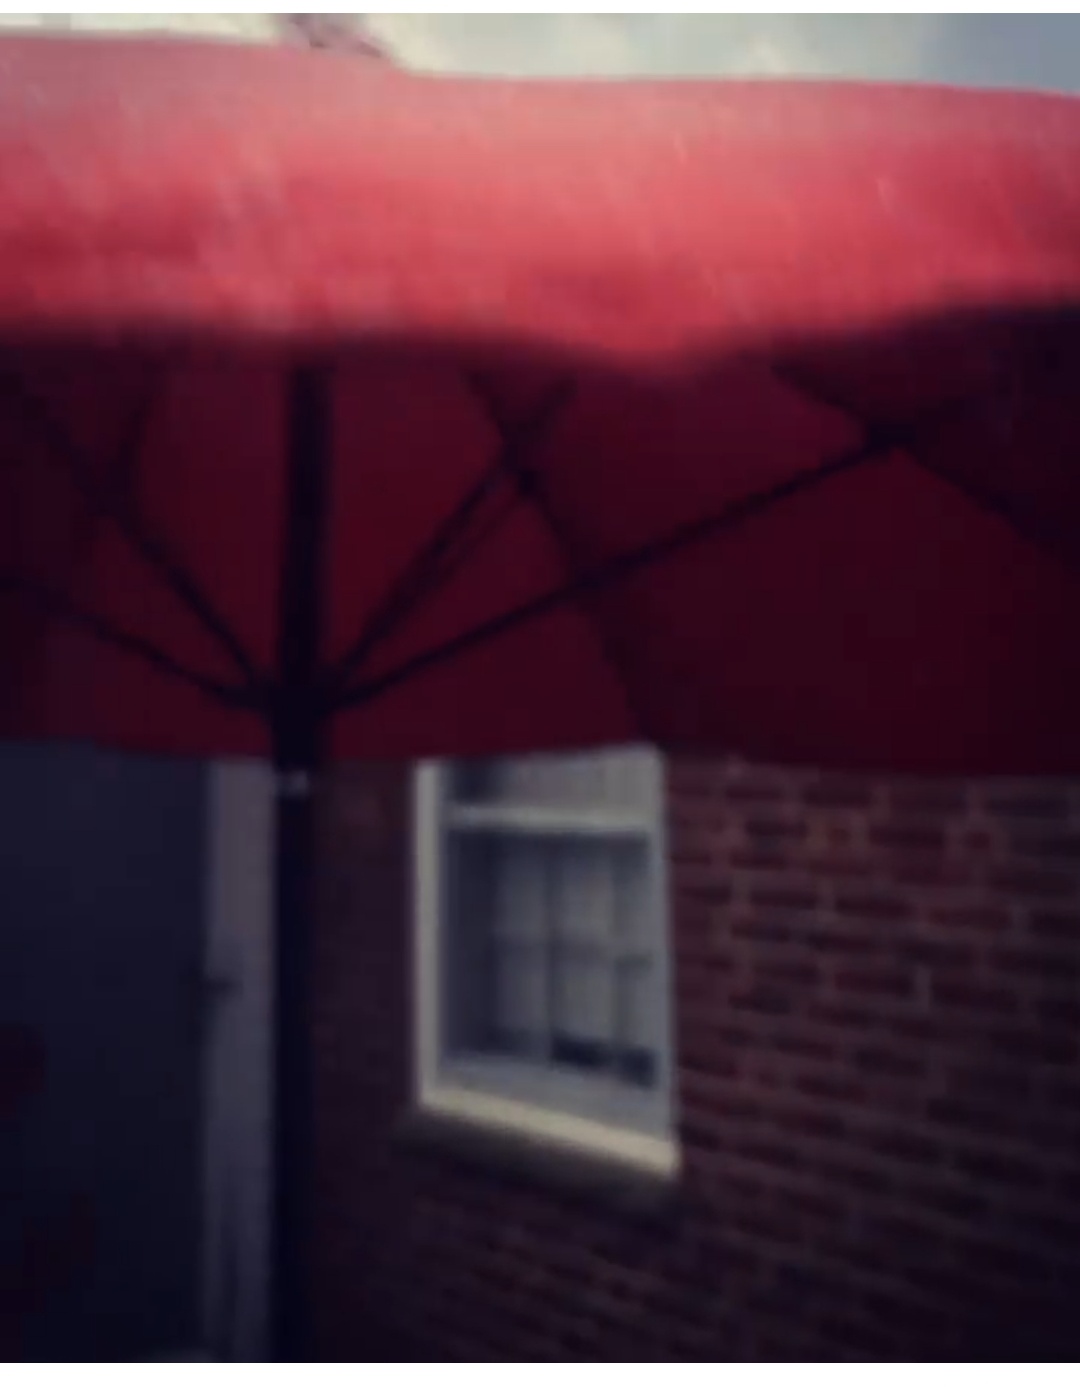 Cape Made Into Umbrella